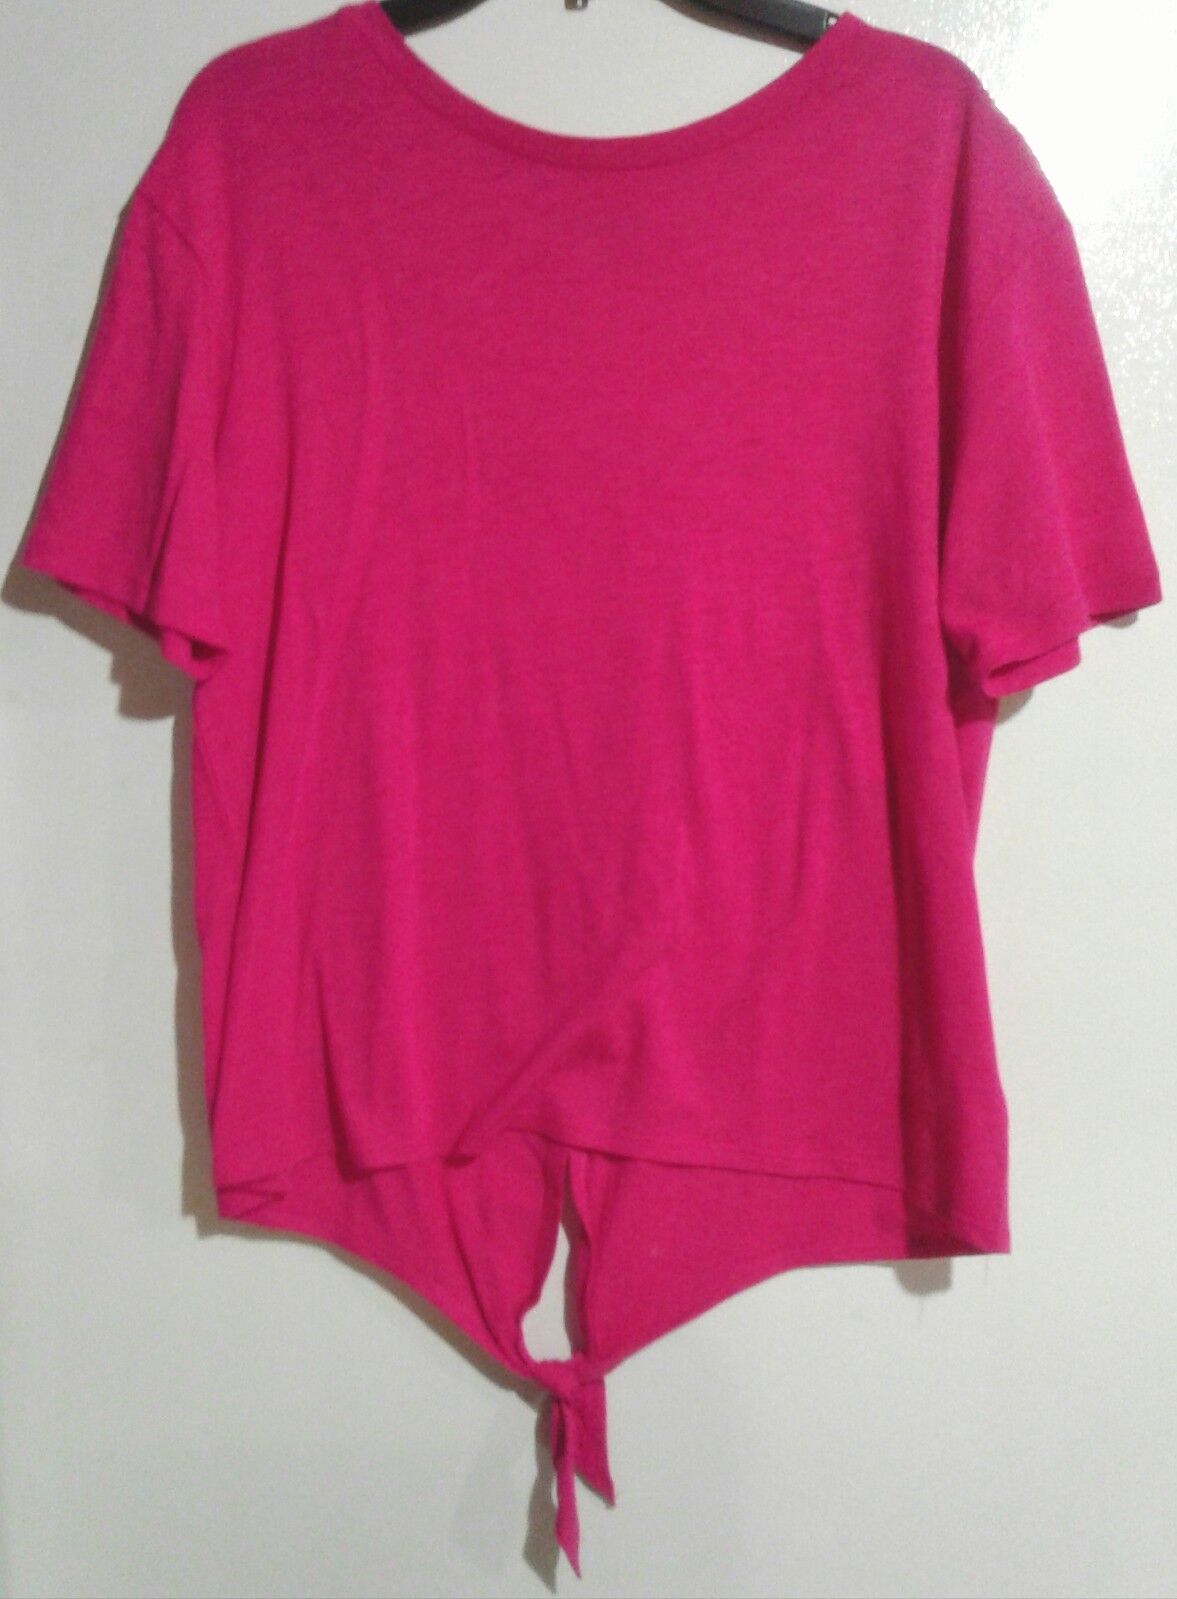 Falls Creek Hot Pink Short Sleeve T-shirt Girls Size S